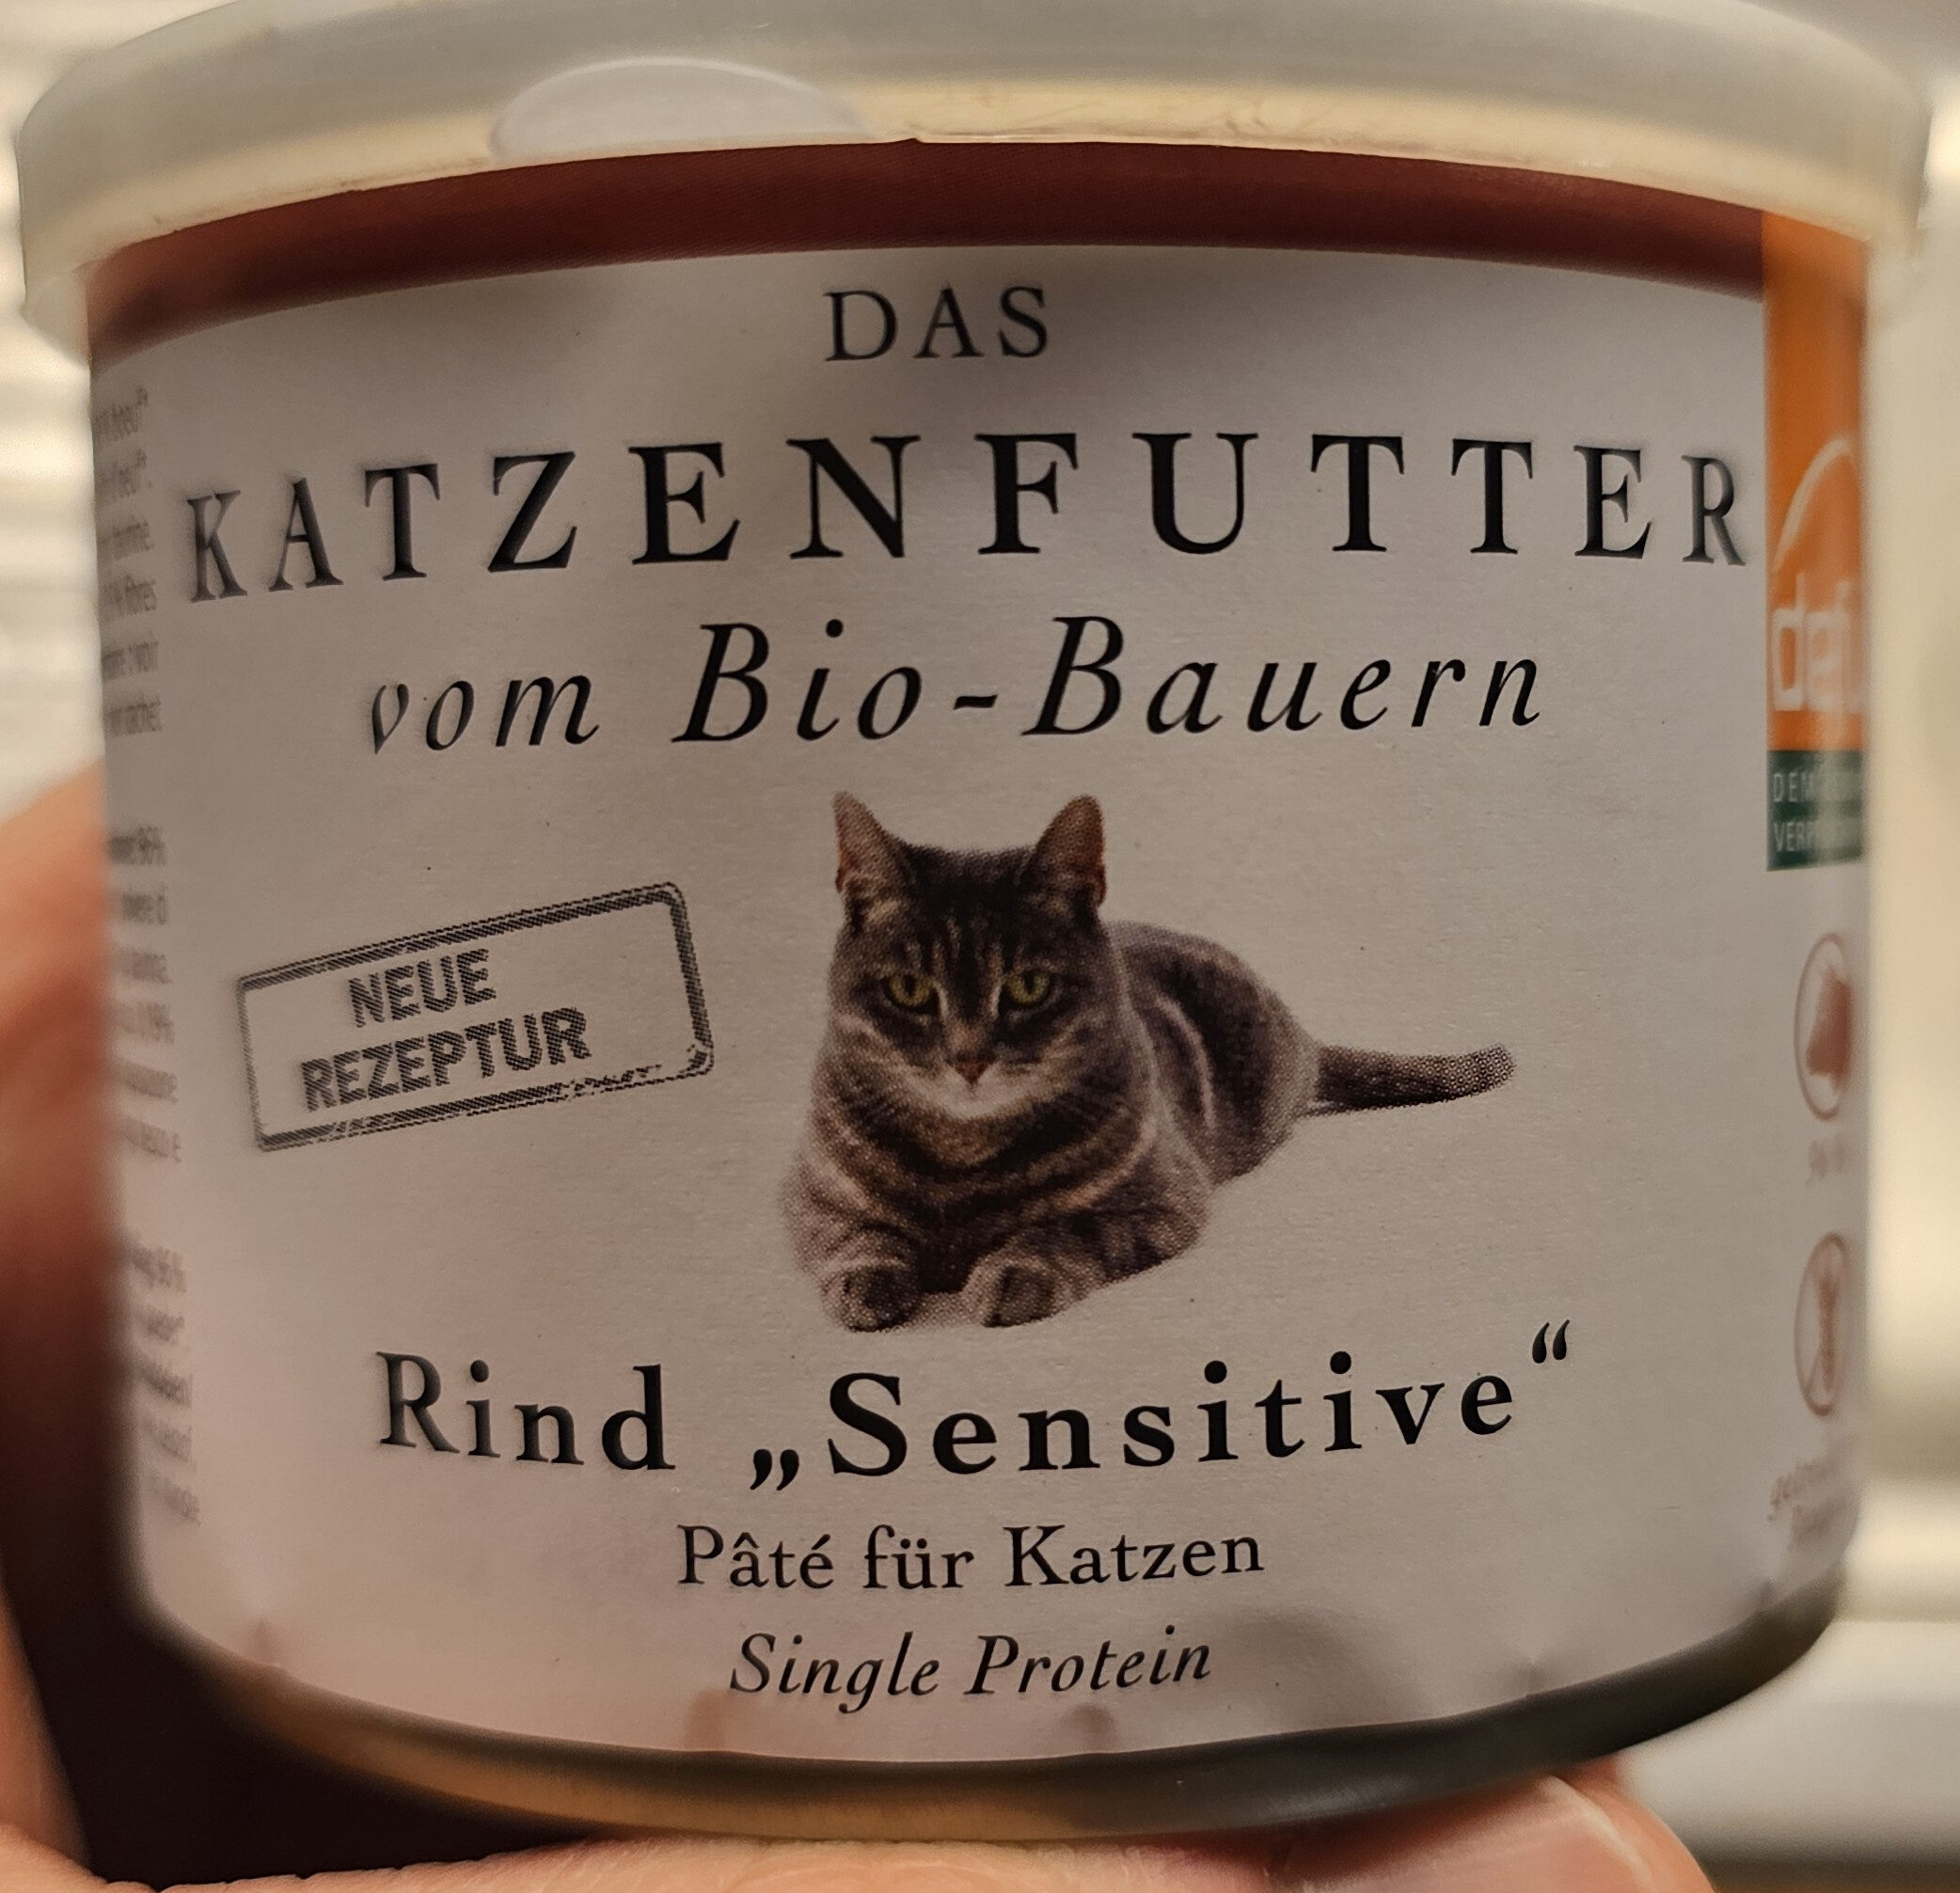 Katzenfutter vom Bio-Bauern Rind Sensitive - Product - en